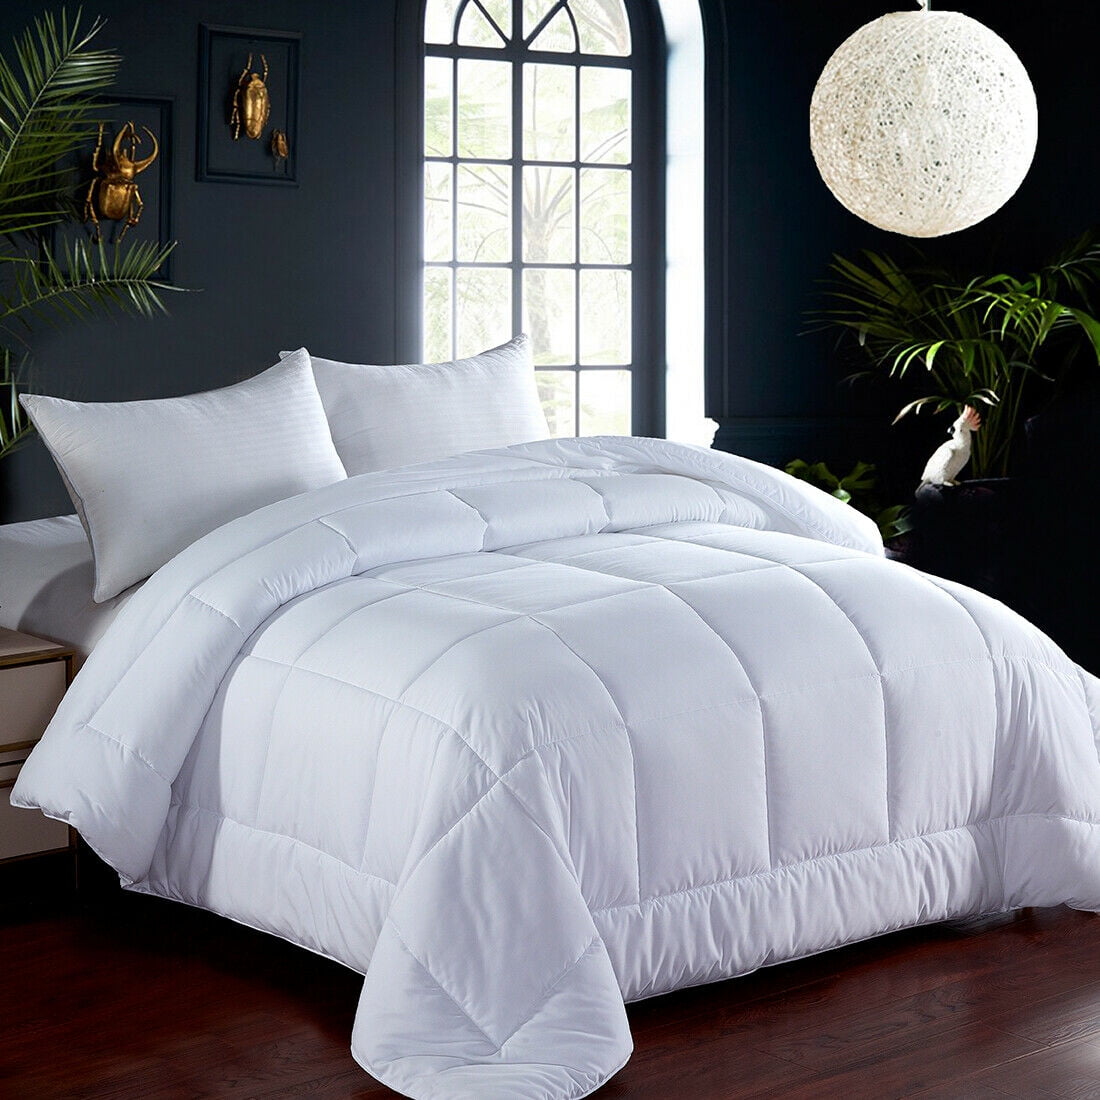 KingLinen® White Down Alternative Comforter Duvet Insert with Conner Tabs 